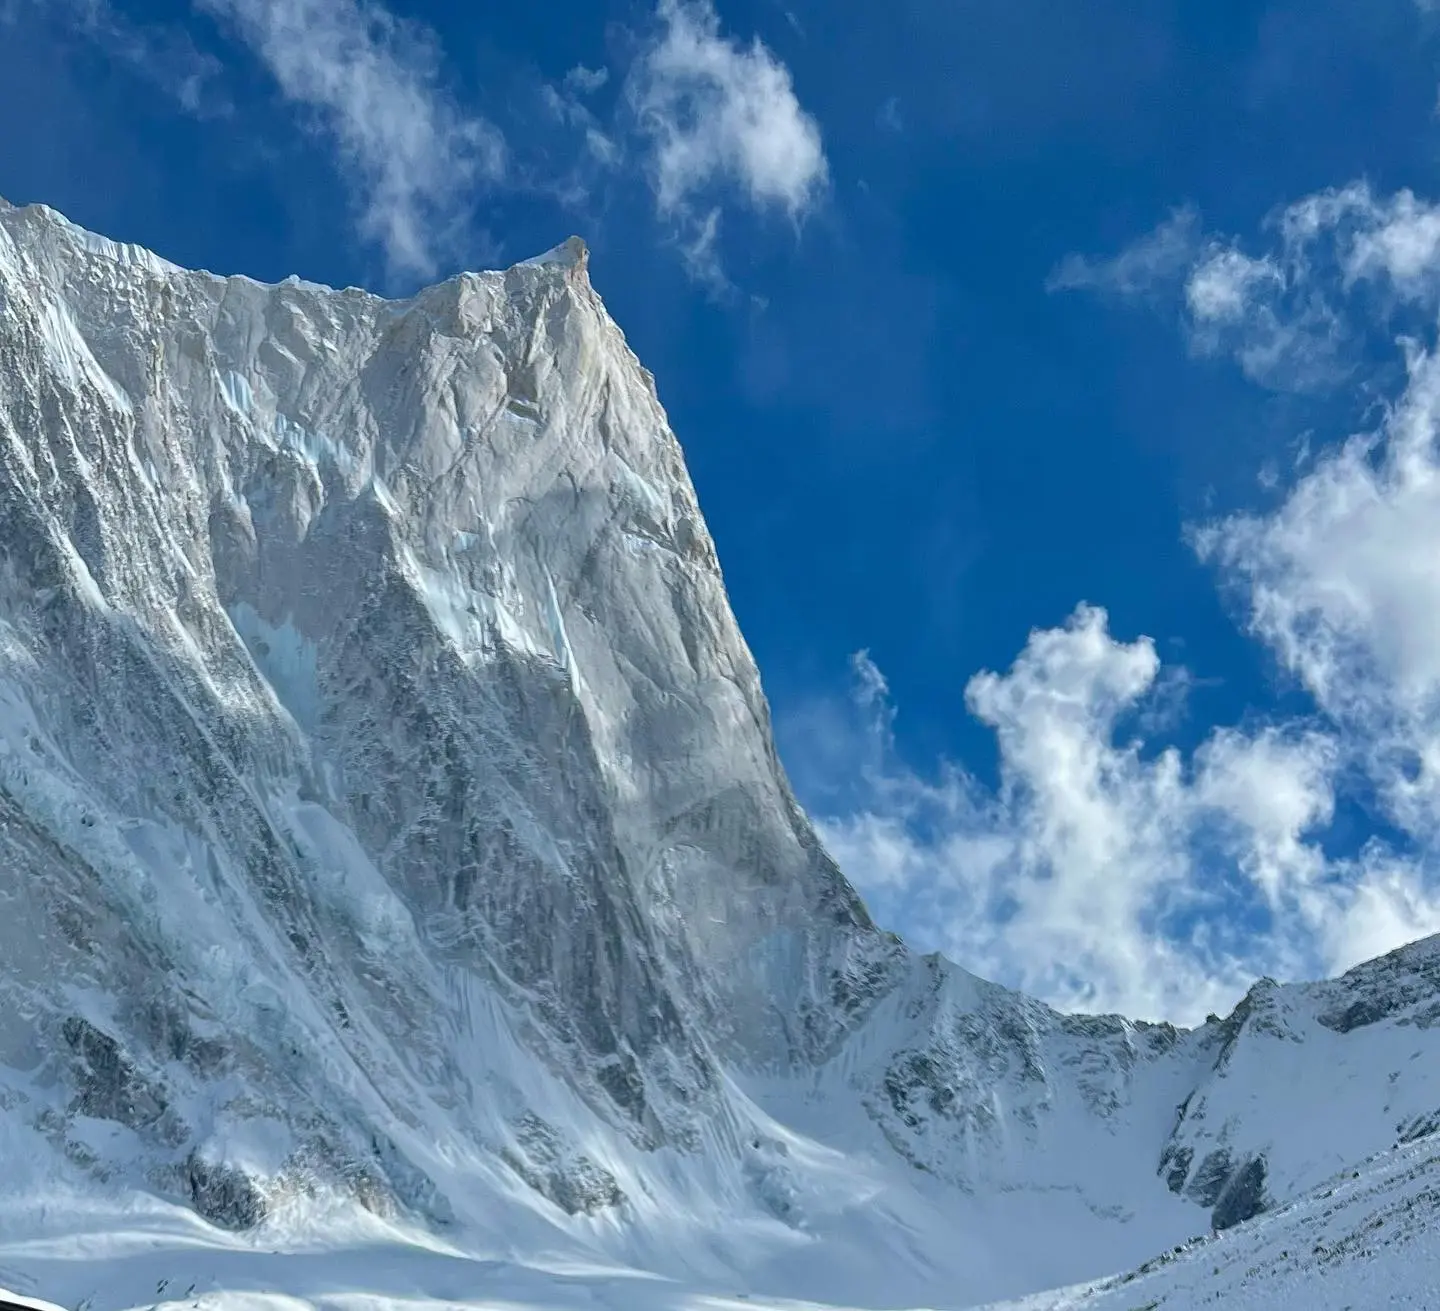 1700-метровая западная стена горы Чангабанг (Changabang, 6864 м) в Индийских Гималаях.